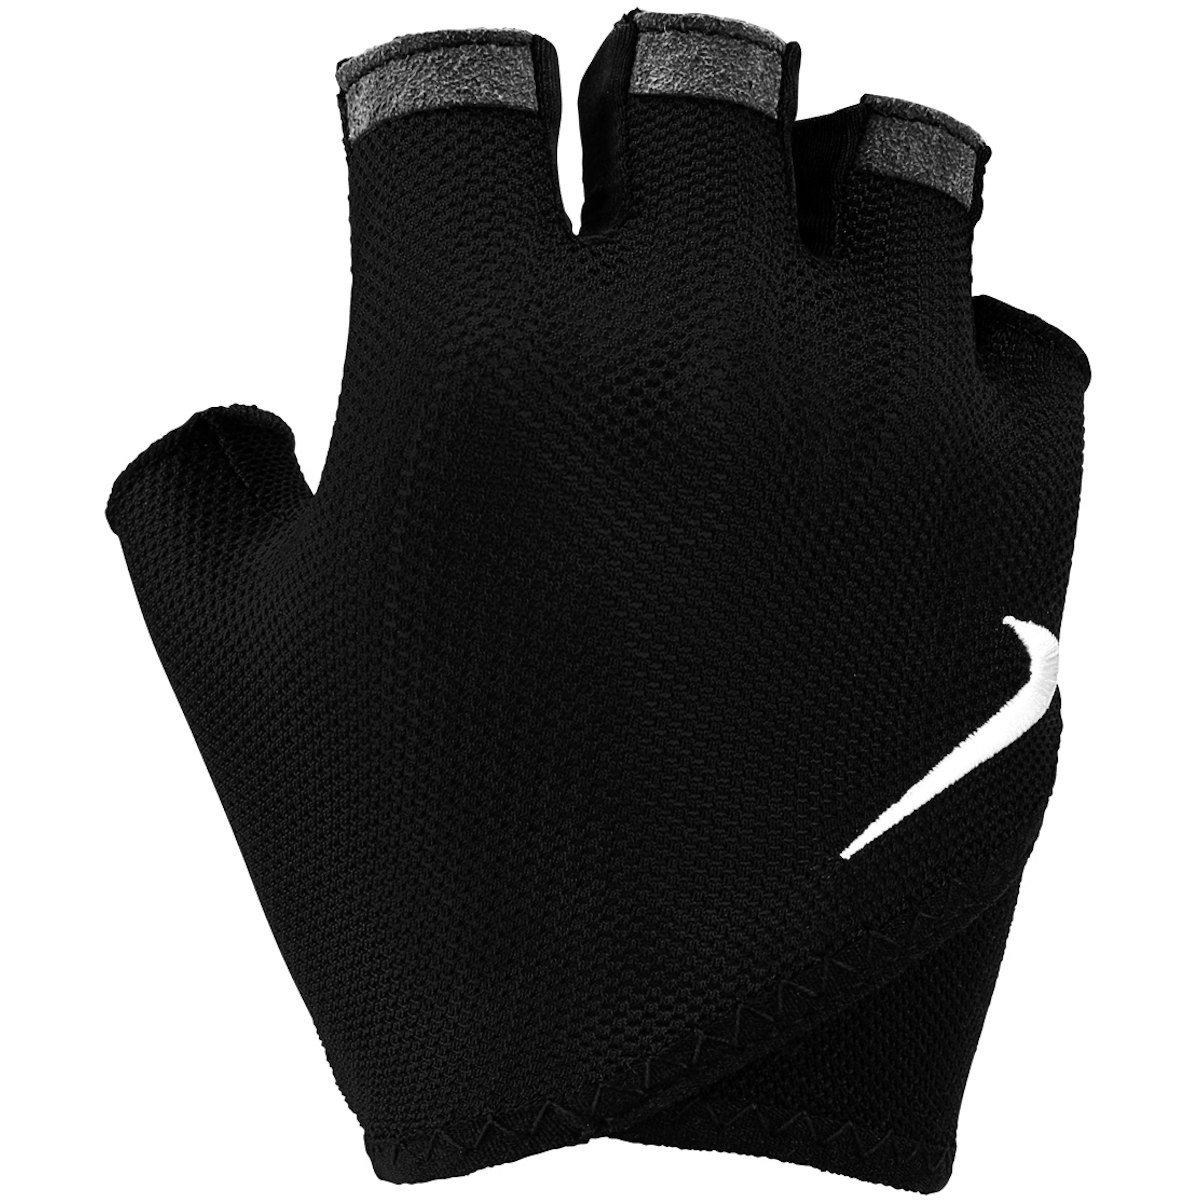 Produktbild von Nike Damen Printed Gym Essential Fitness-Handschuhe - schwart/weiß 010